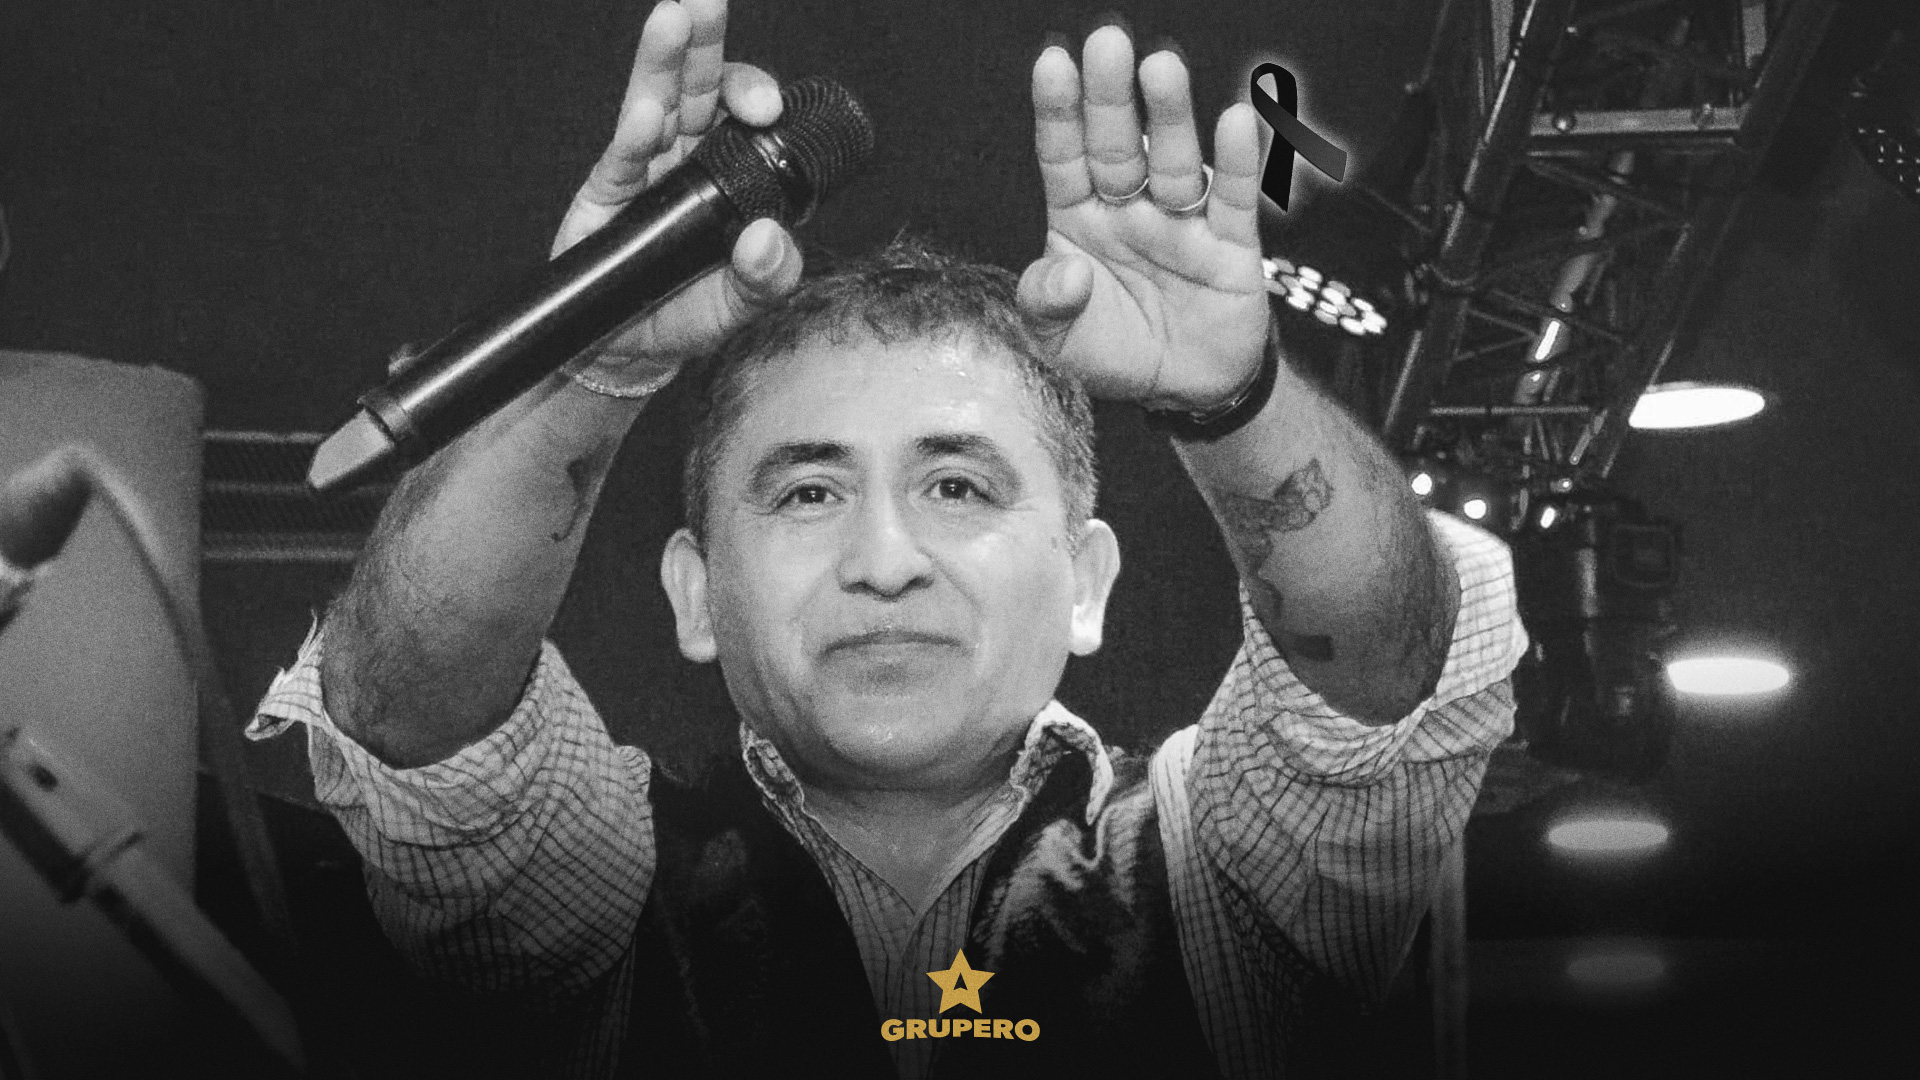 Fallece el cantante Huguito Flores “El Super” en trágico accidente